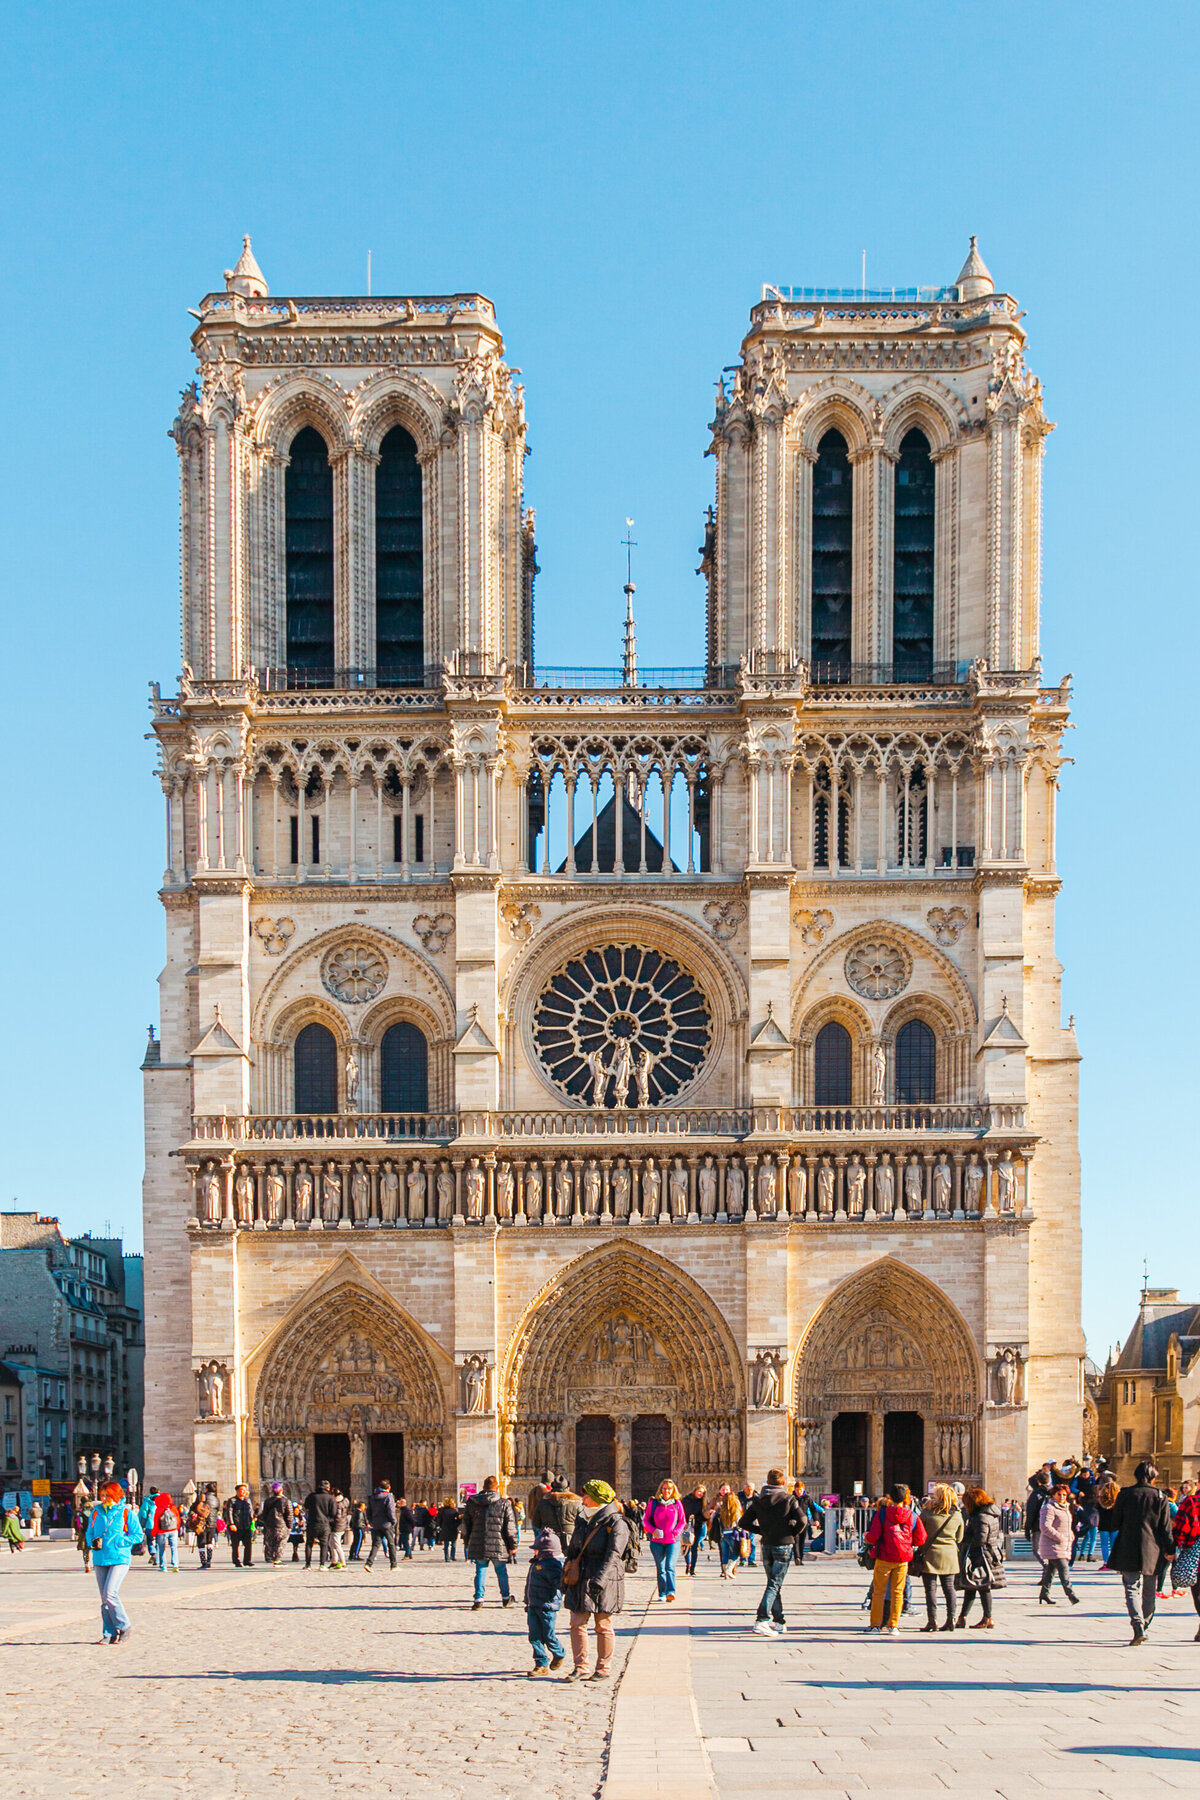 017-KBP-Paris-France-Notre-Dame